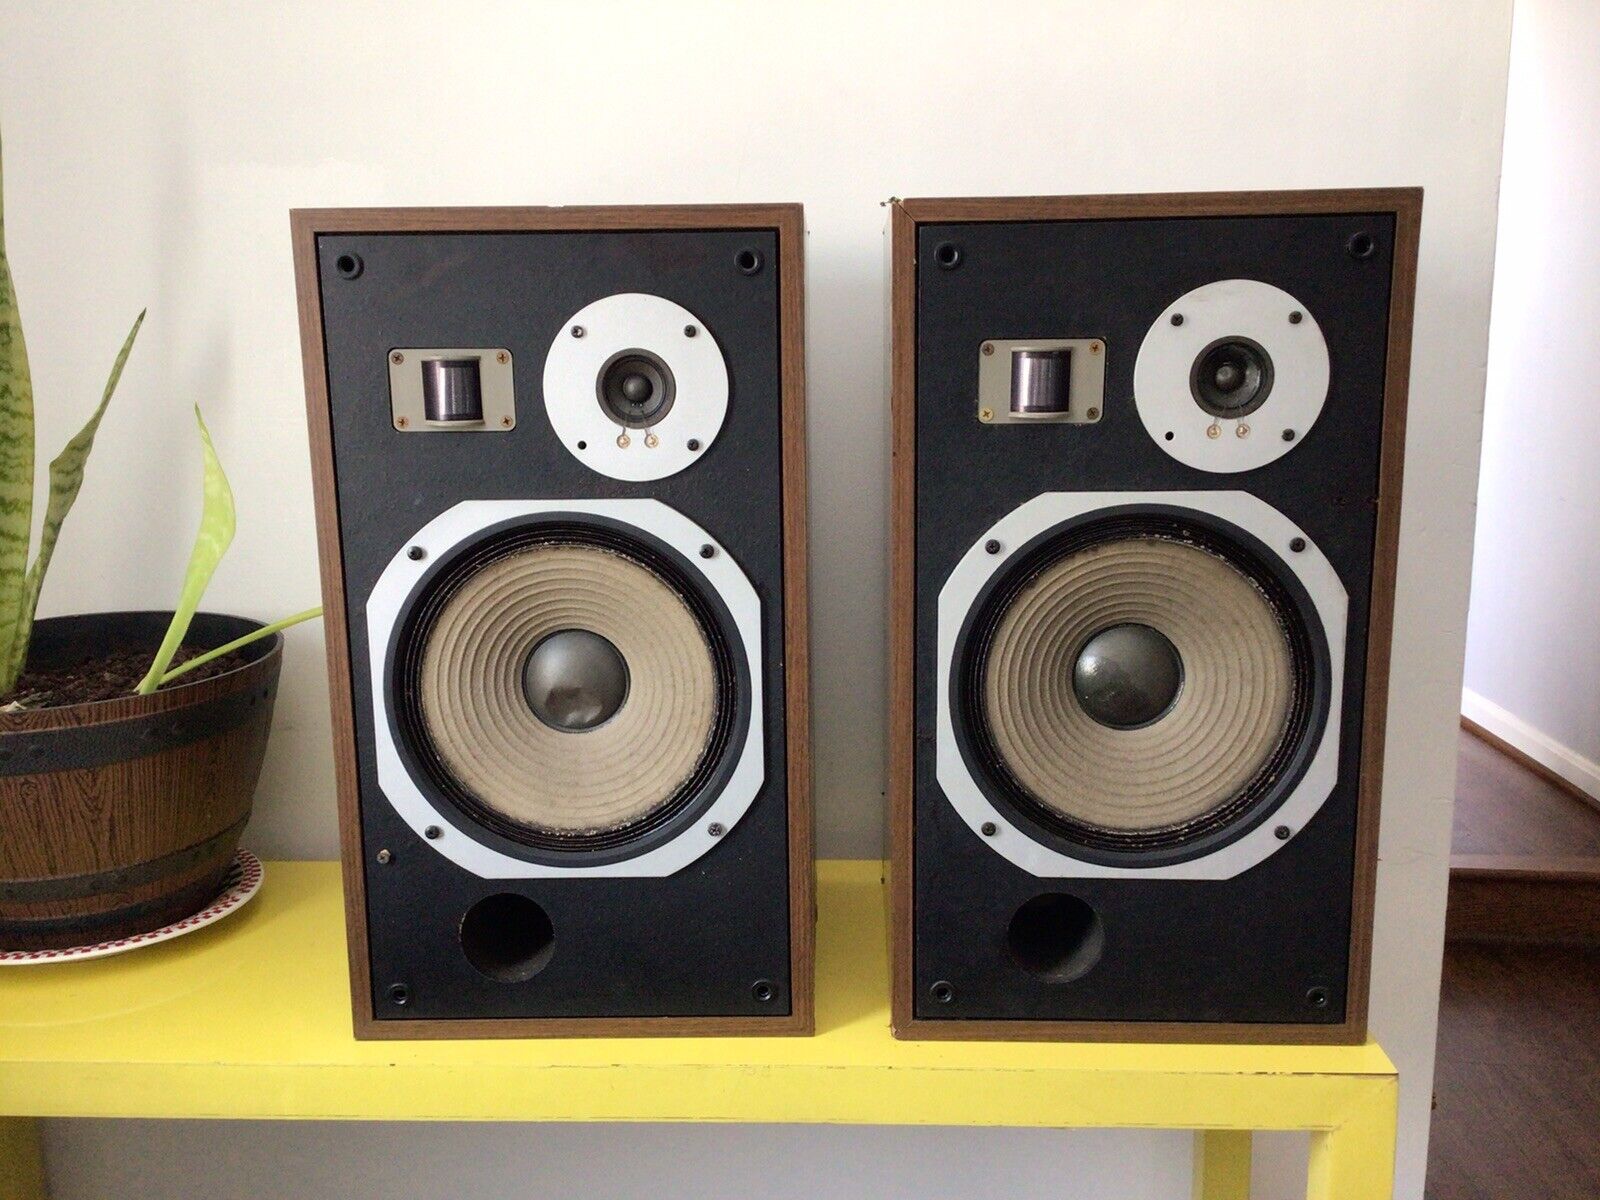 Pioneer HPM-40 Speakers